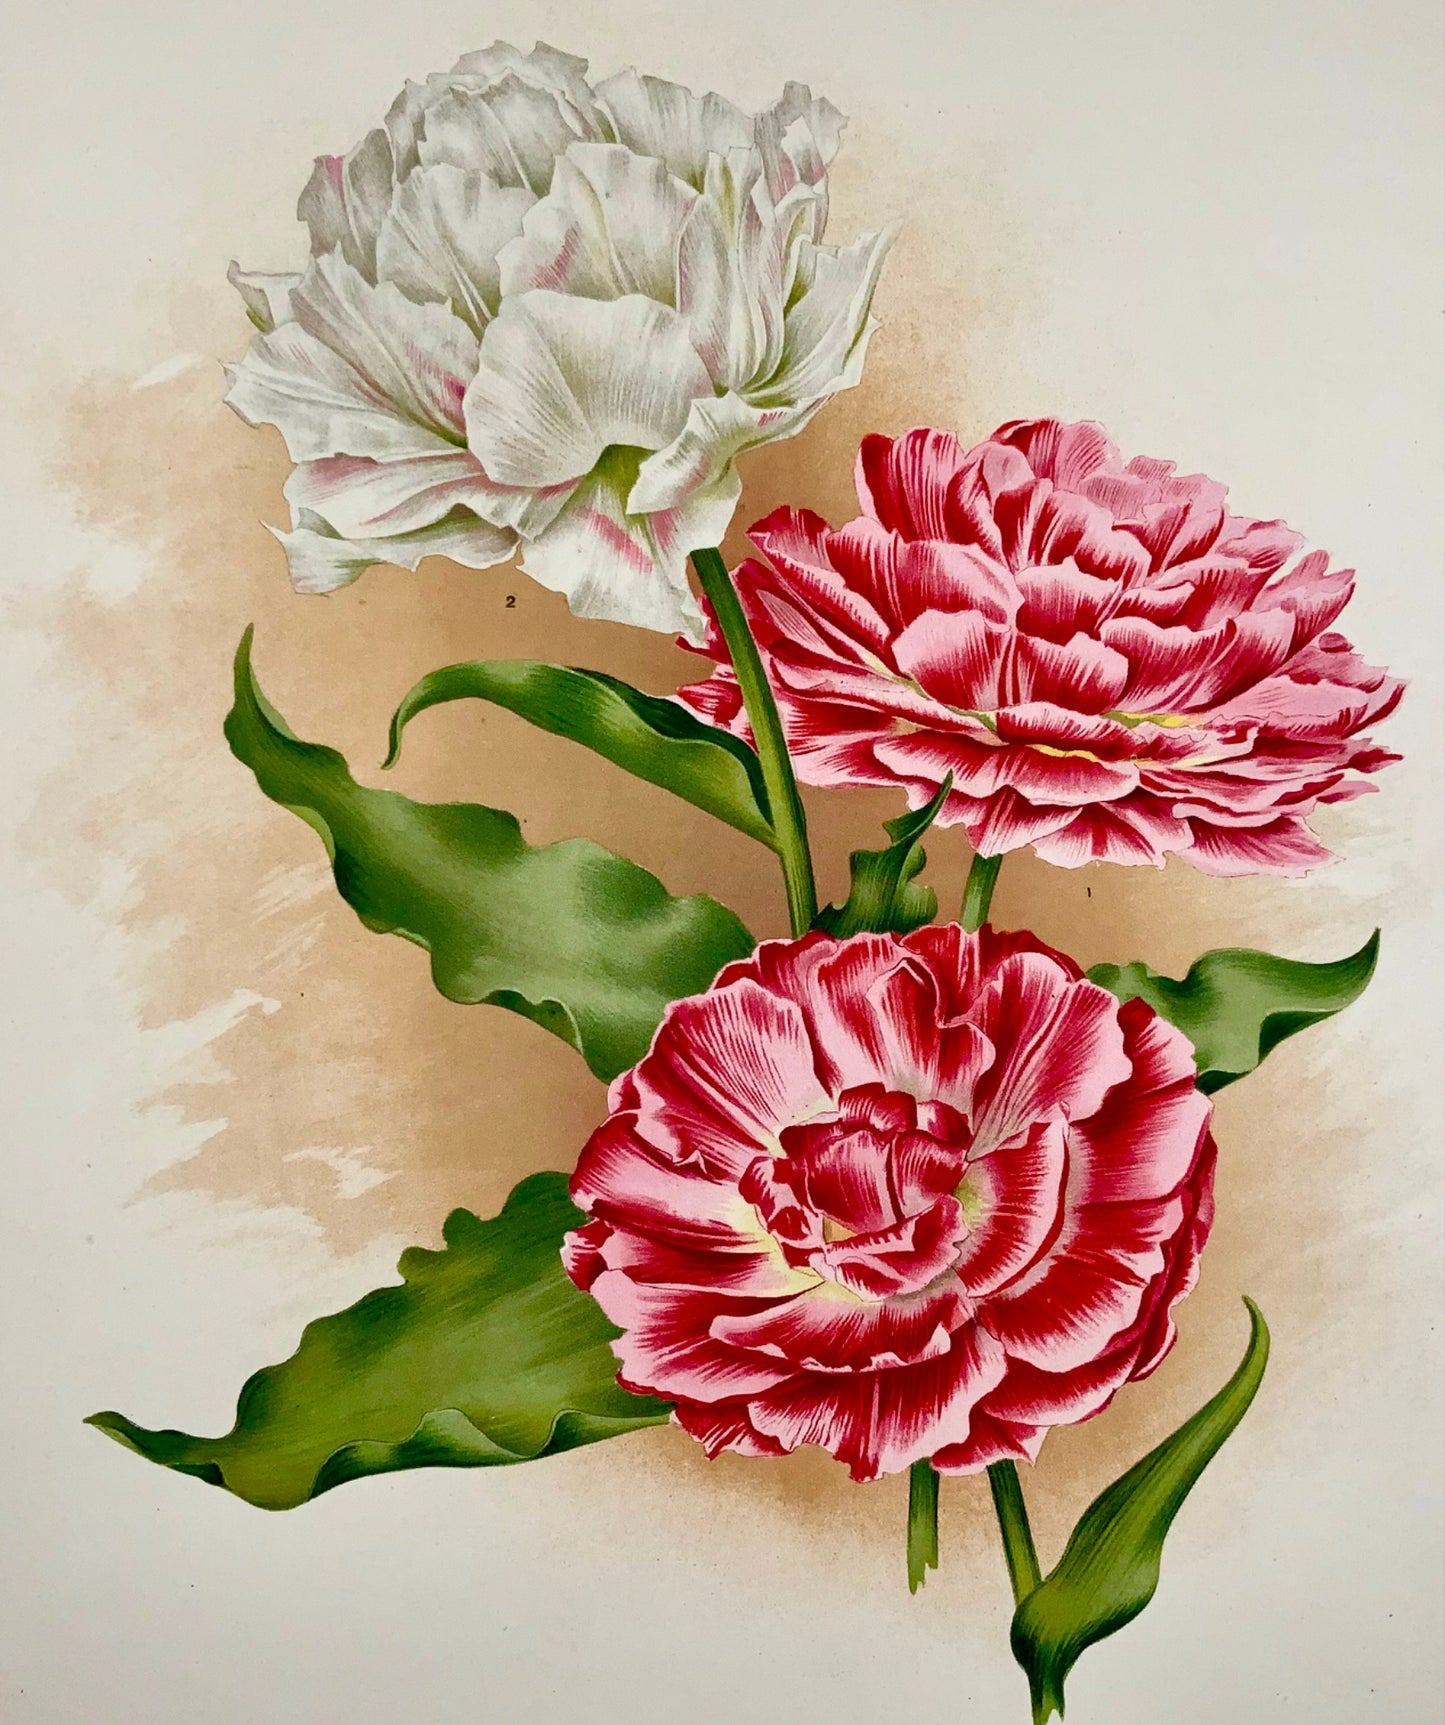 1901 Tulipes Lord Beaconsfield - Florilegium Harlemense - 36cm - Botanique